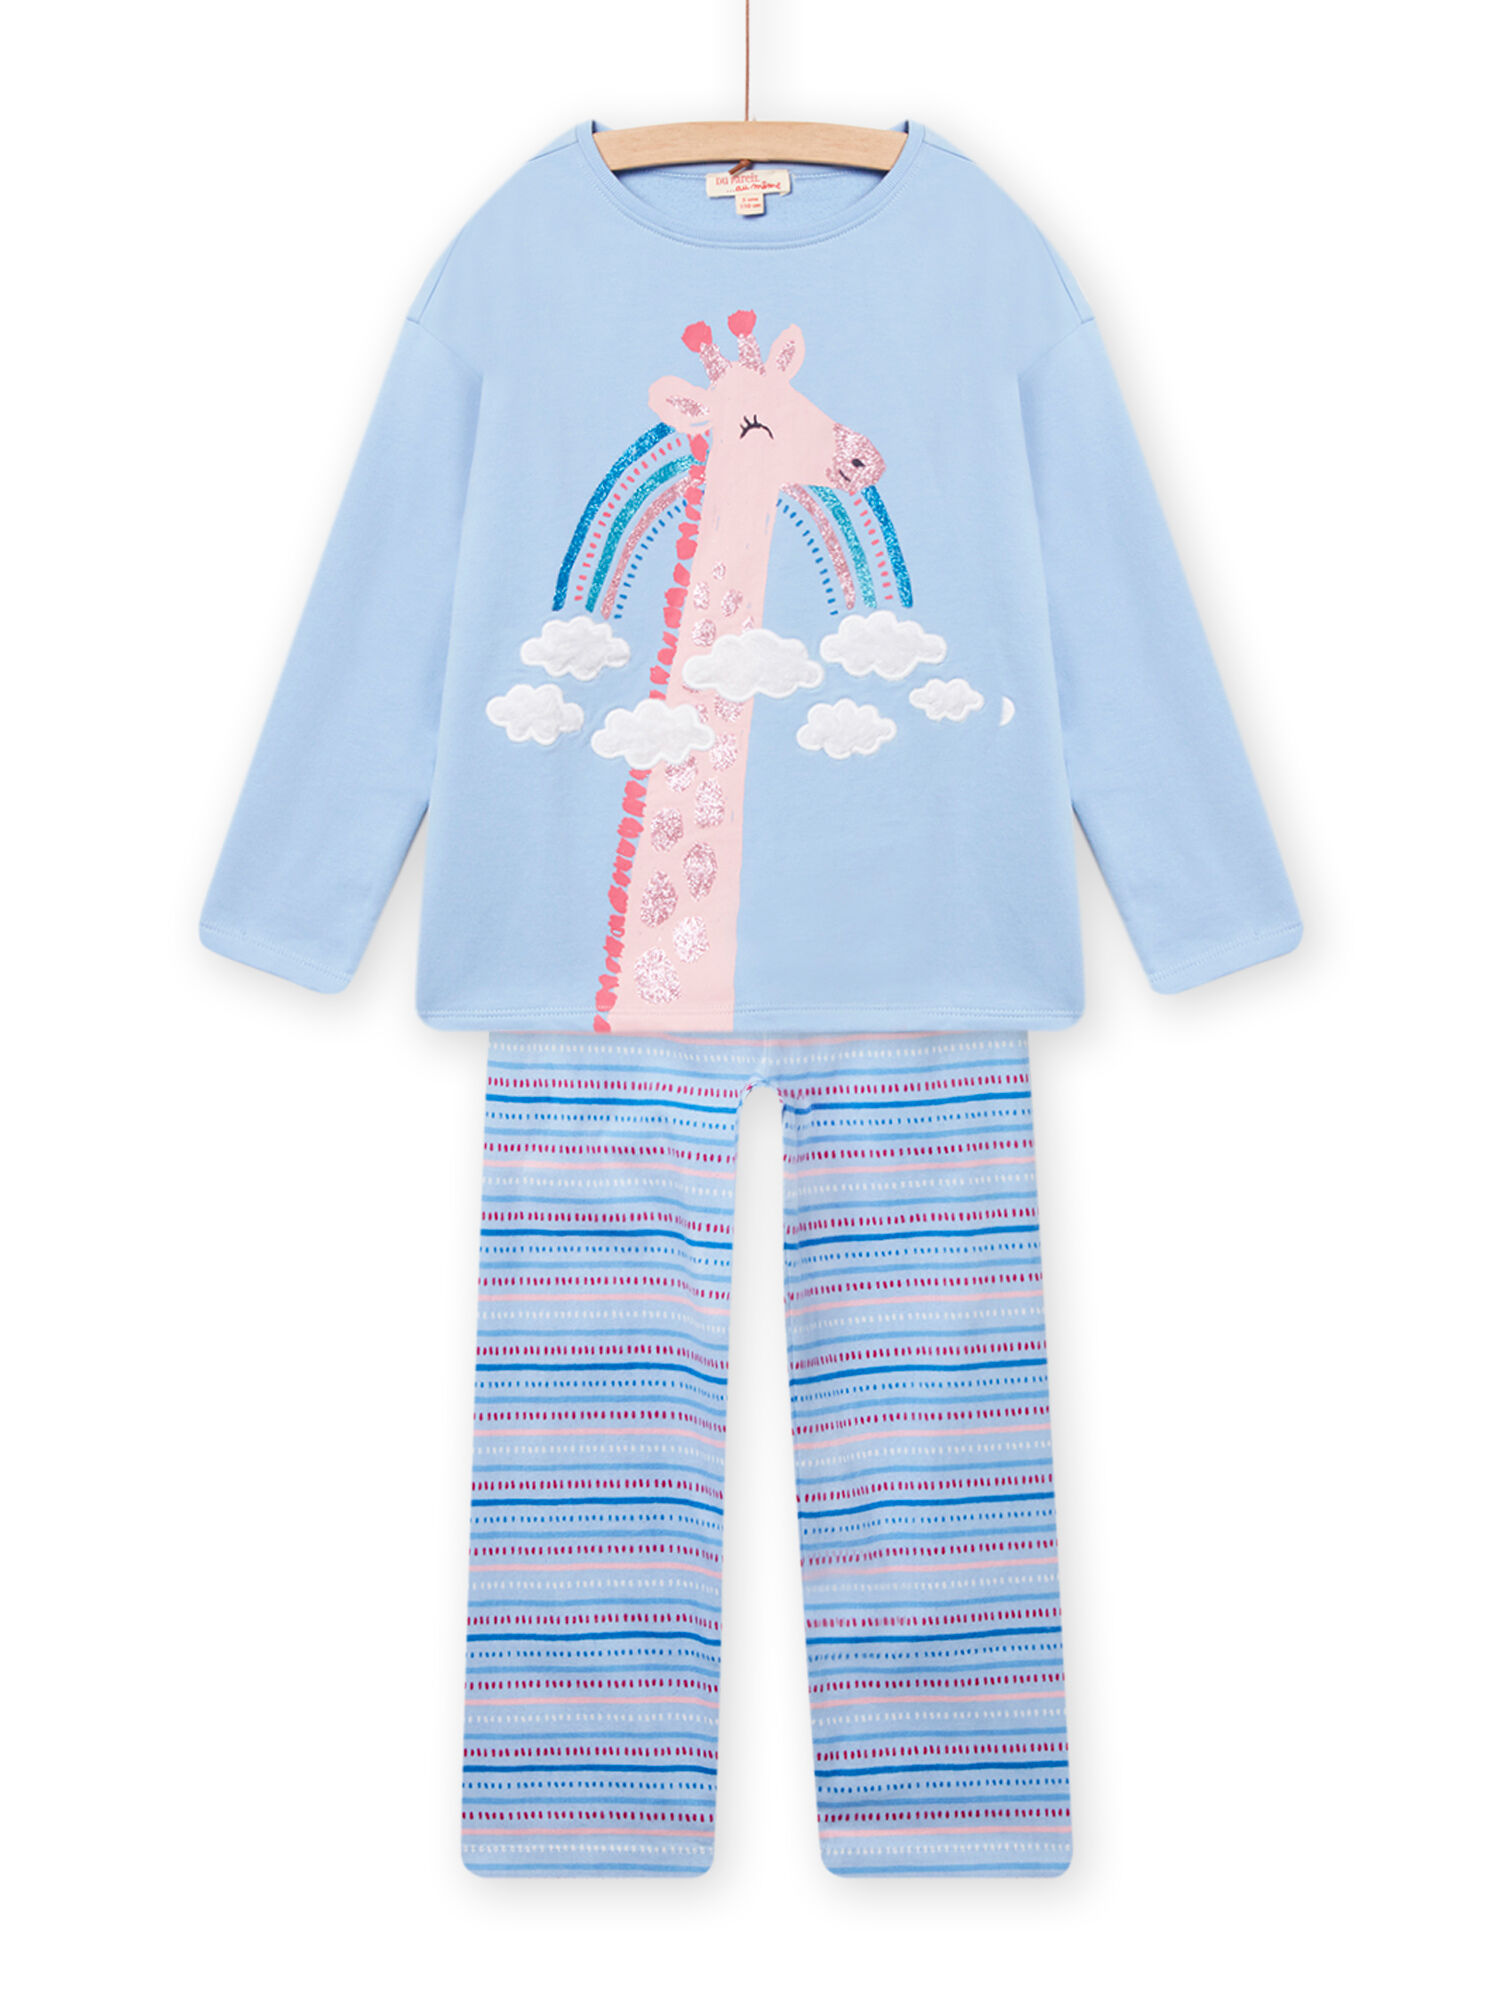 Sac de couchage noué Pyjama pour nouveau-né bébé Cadeaux pour photos bleu ciel 